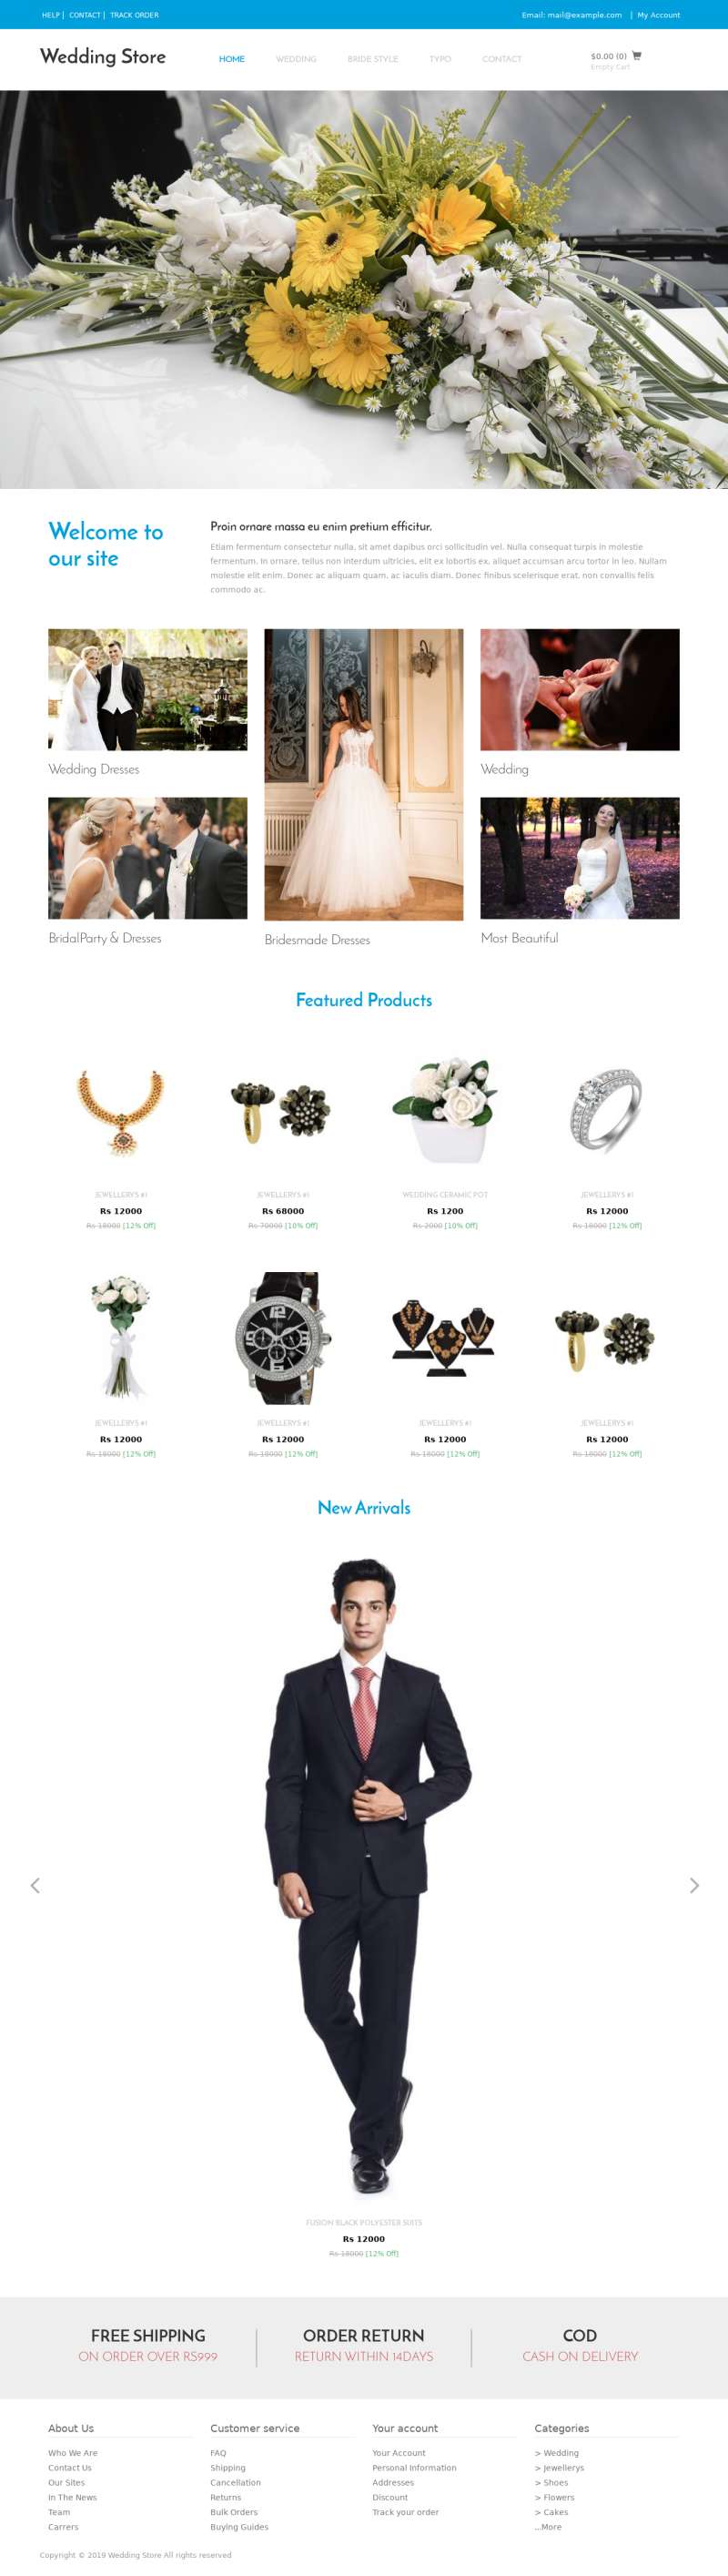 干净简洁的婚纱礼服婚庆用品商城html模板